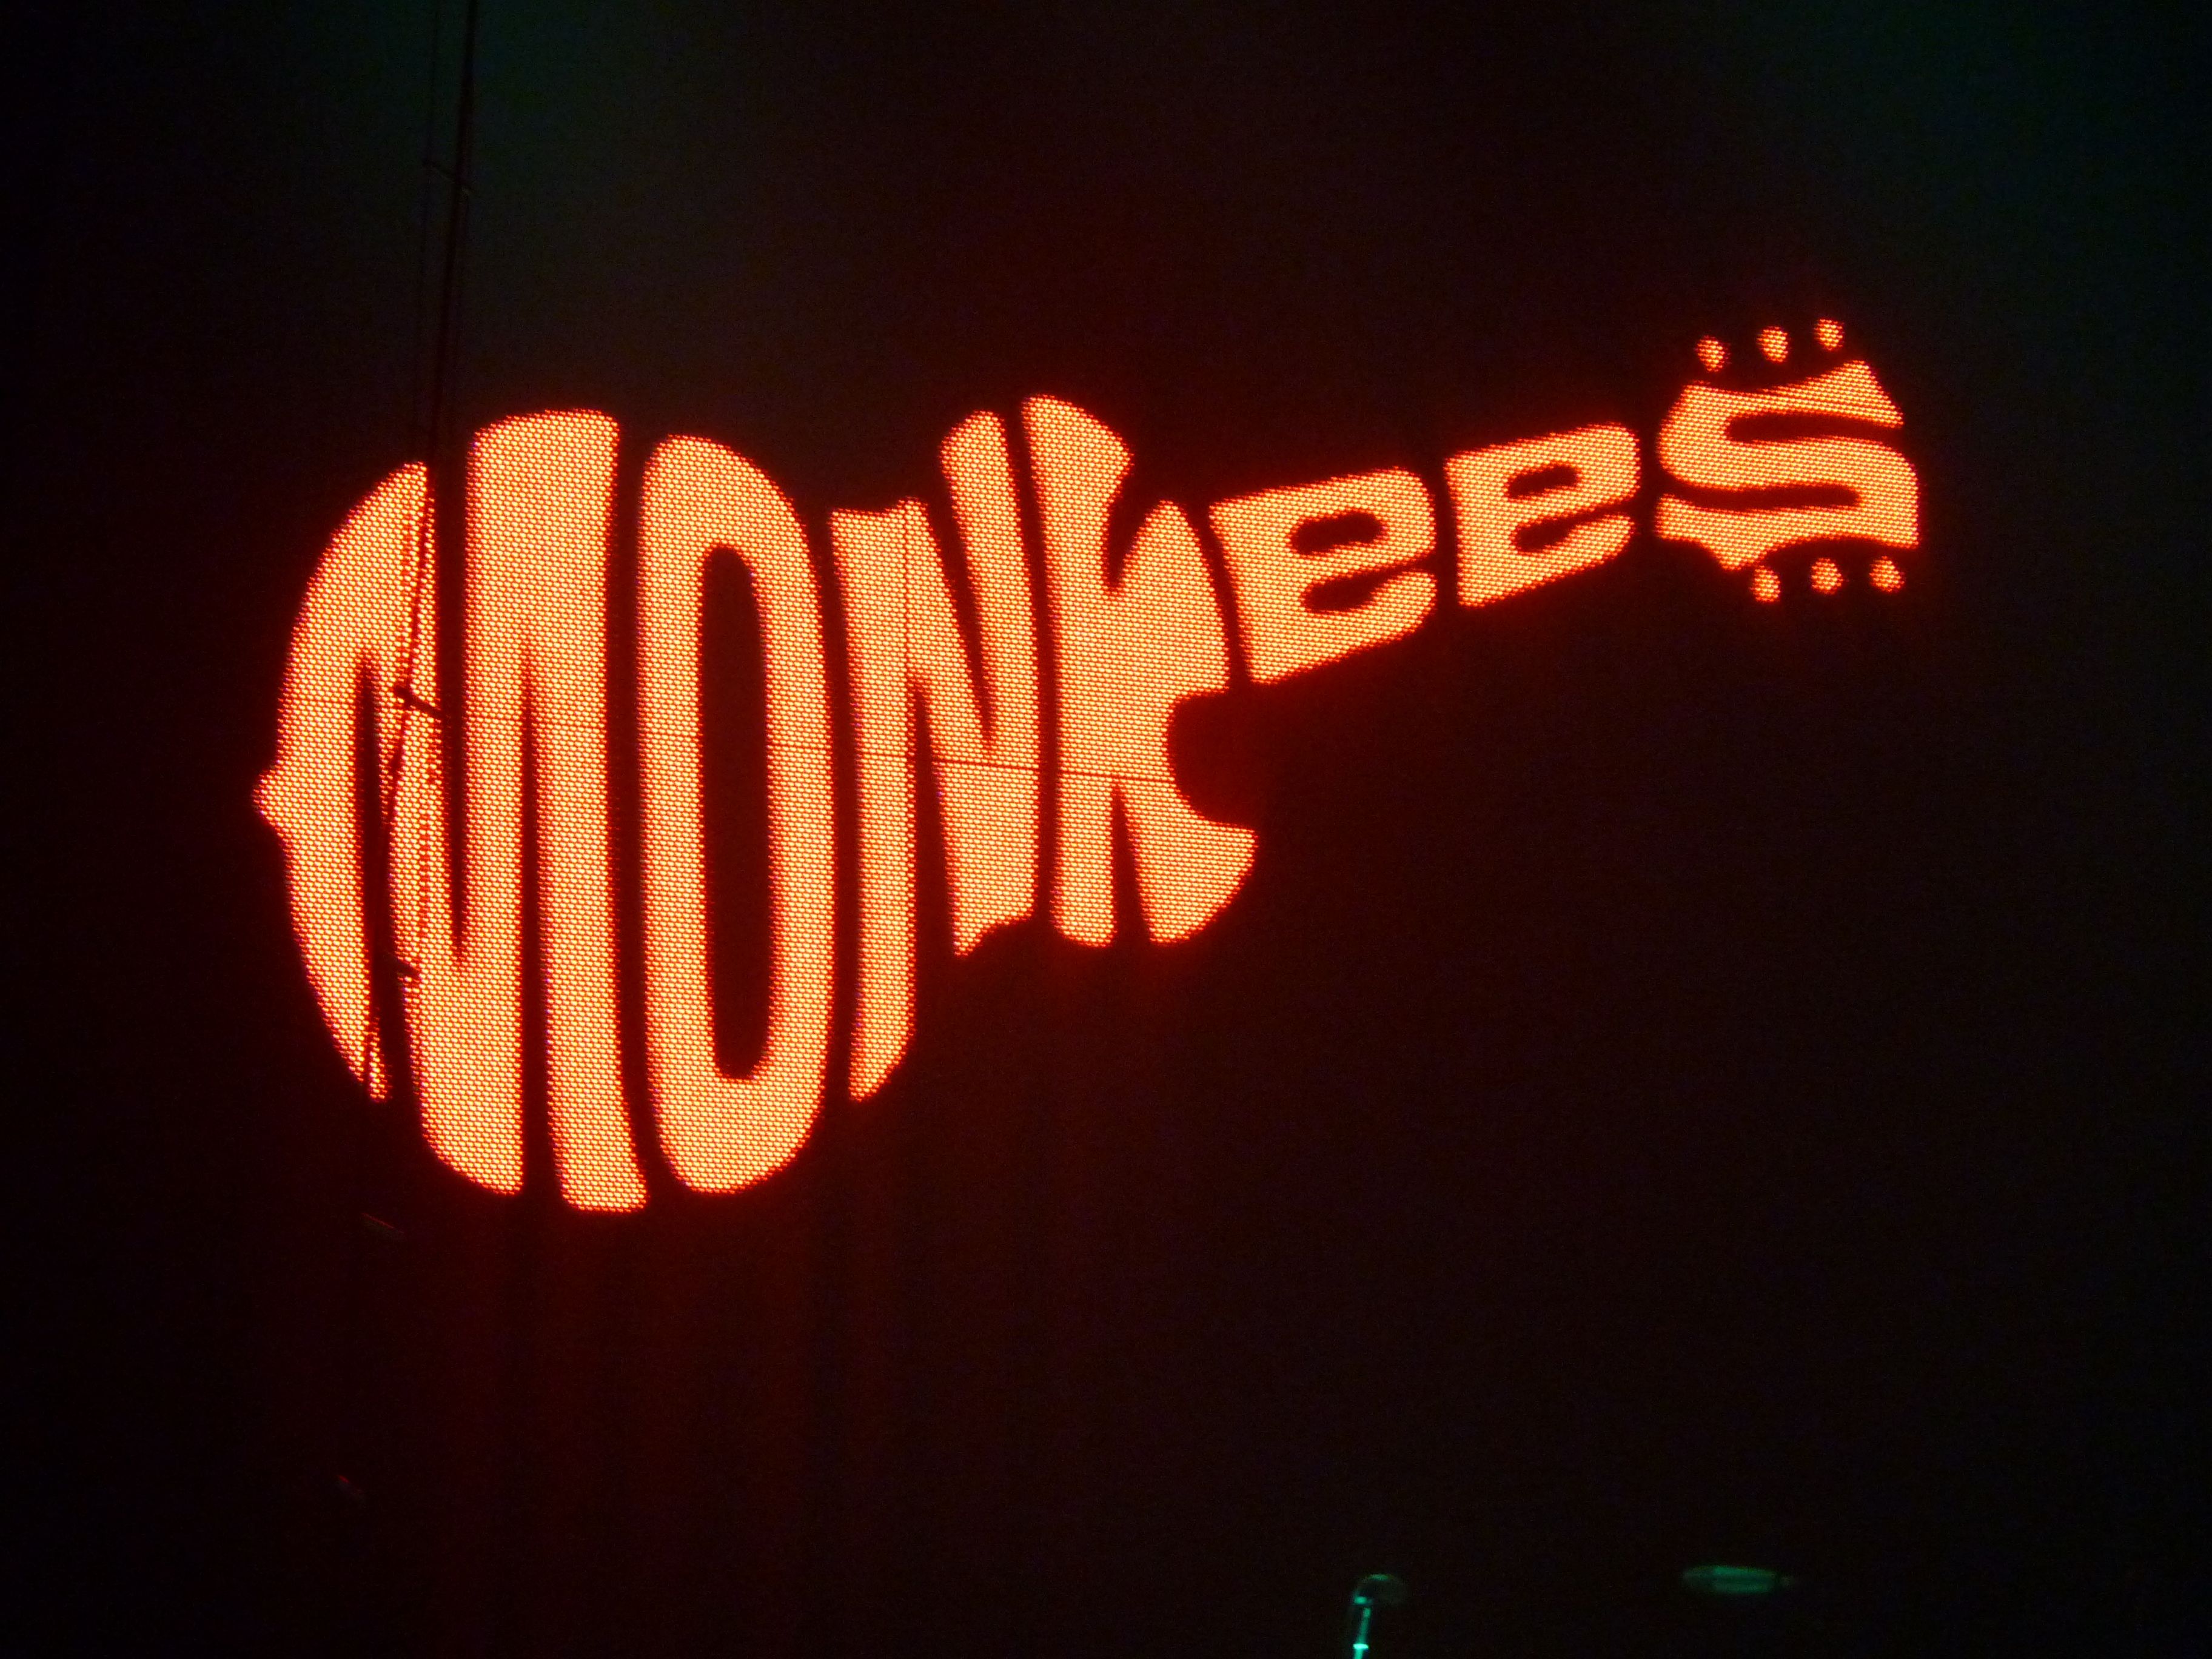 Monkees Wallpaper. Monkees Wallpaper, The Monkees Wallpaper and The Monkees Car Wallpaper